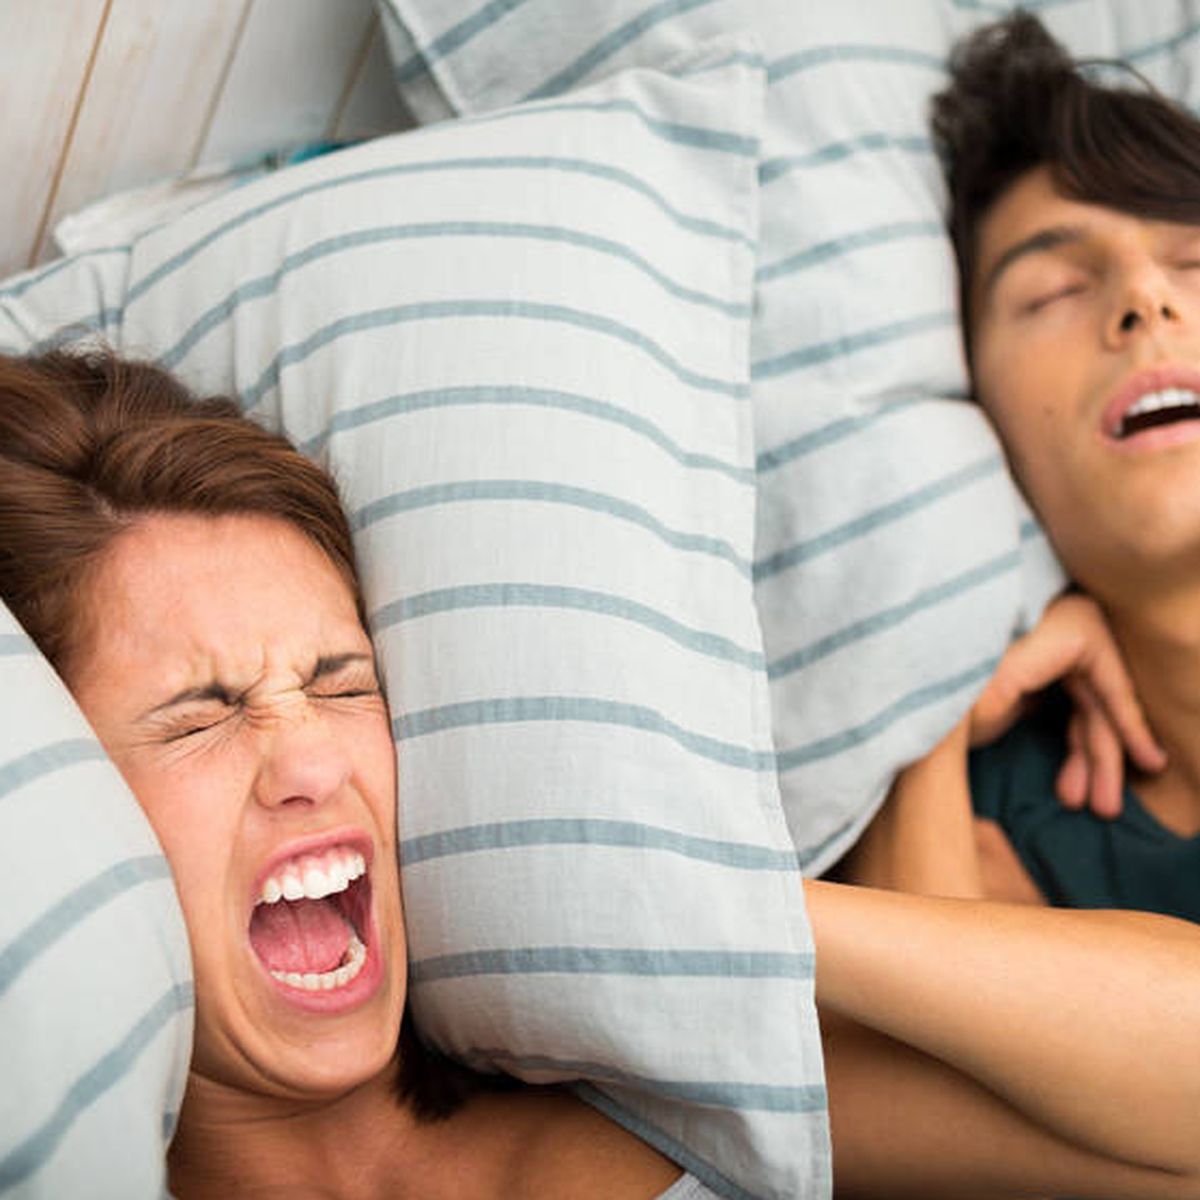 ▷ ¿Cómo Dormir Para No Roncar? Guía Definitiva Para un Buen Descanso